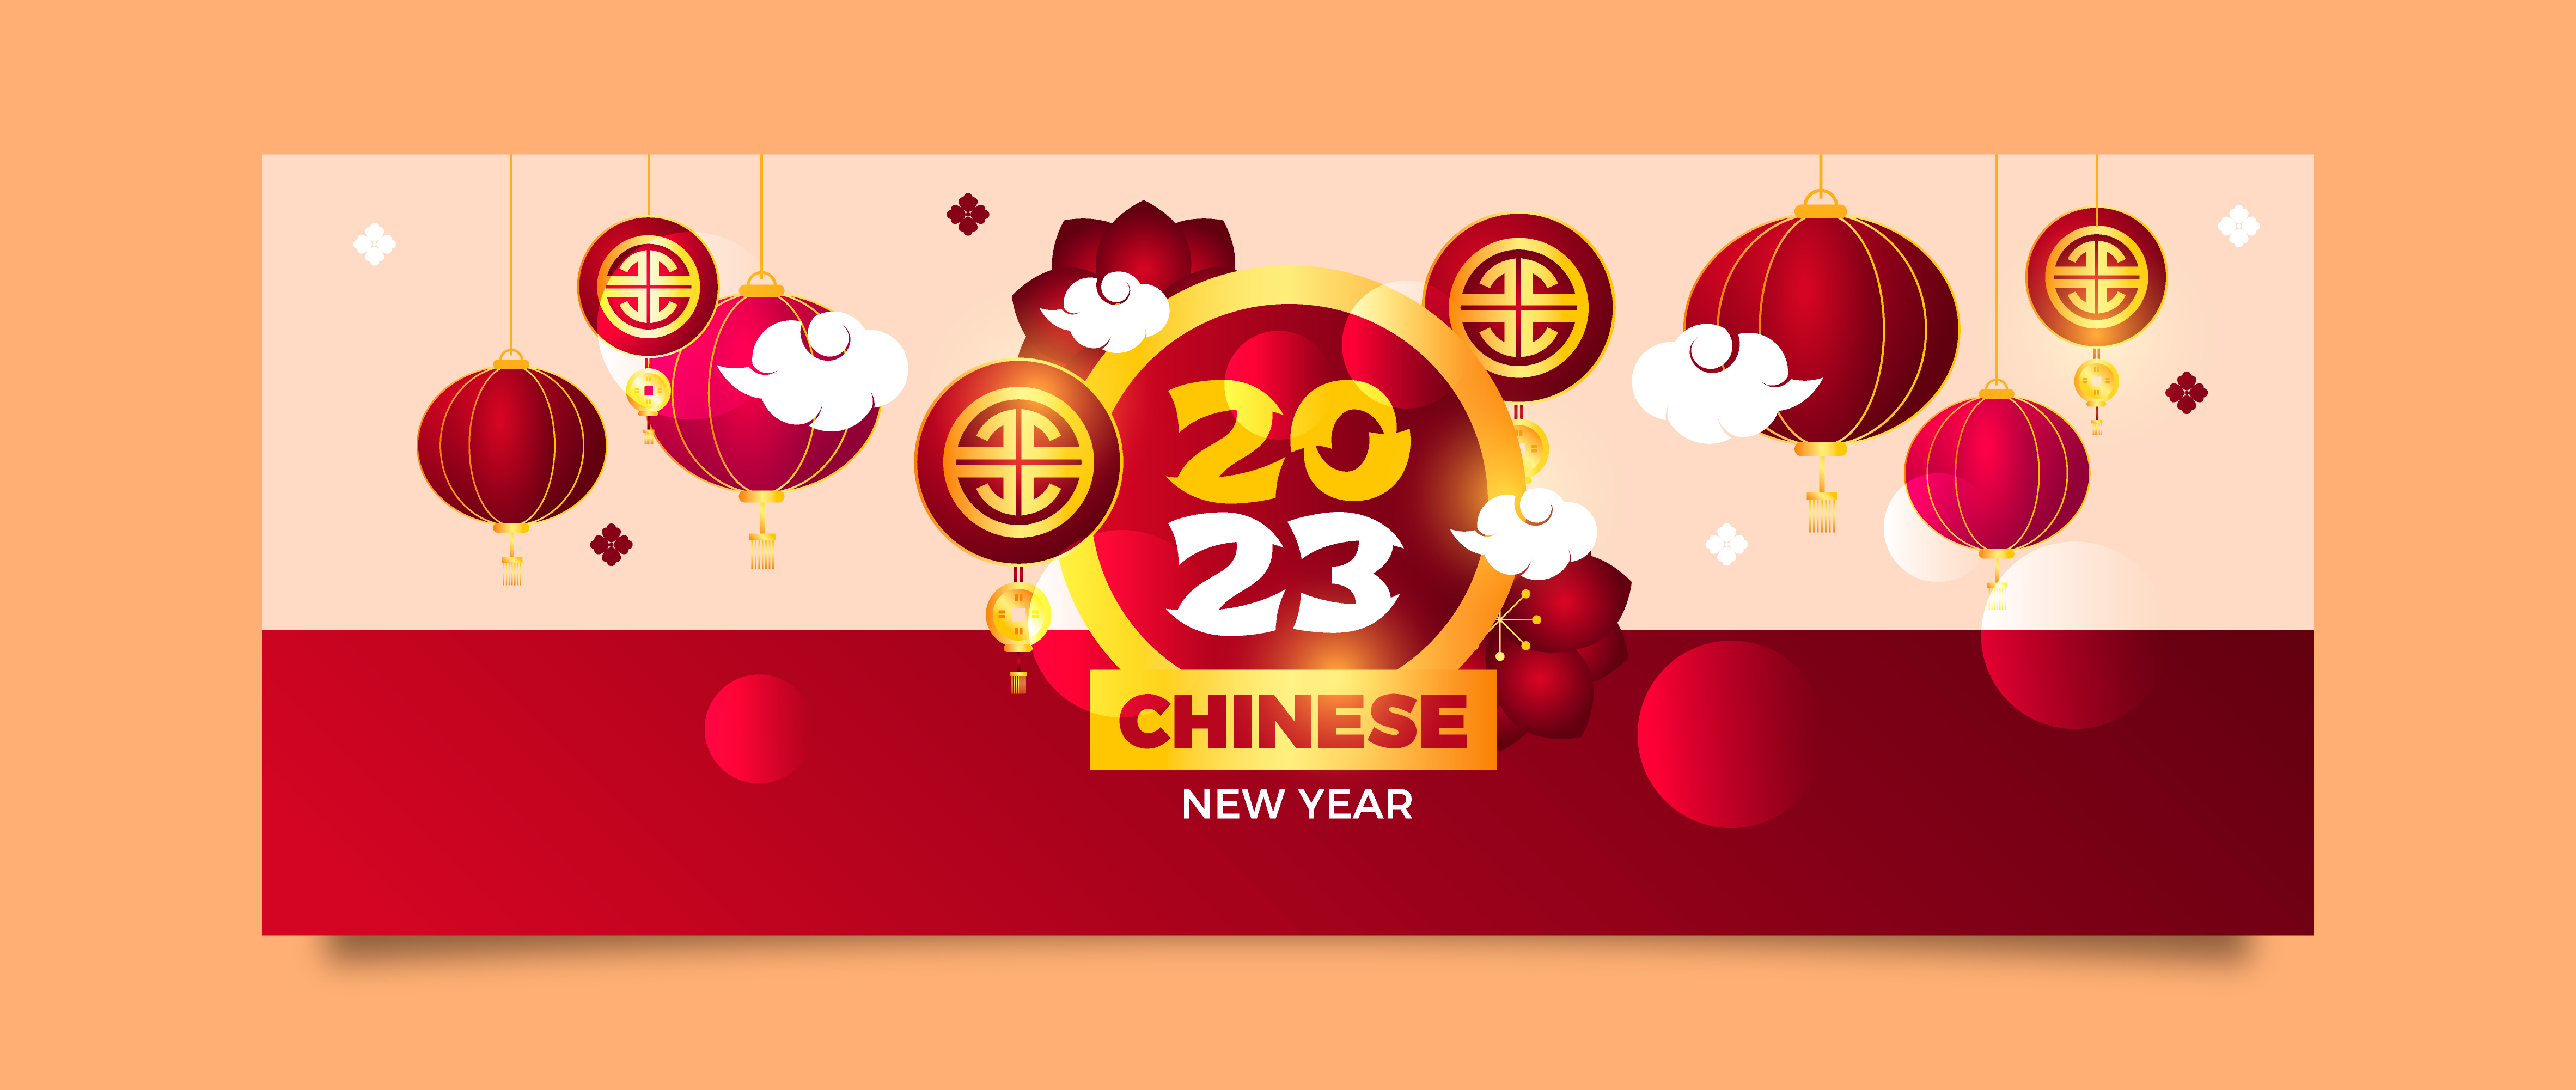 Comenzará el Año Nuevo Chino 2023